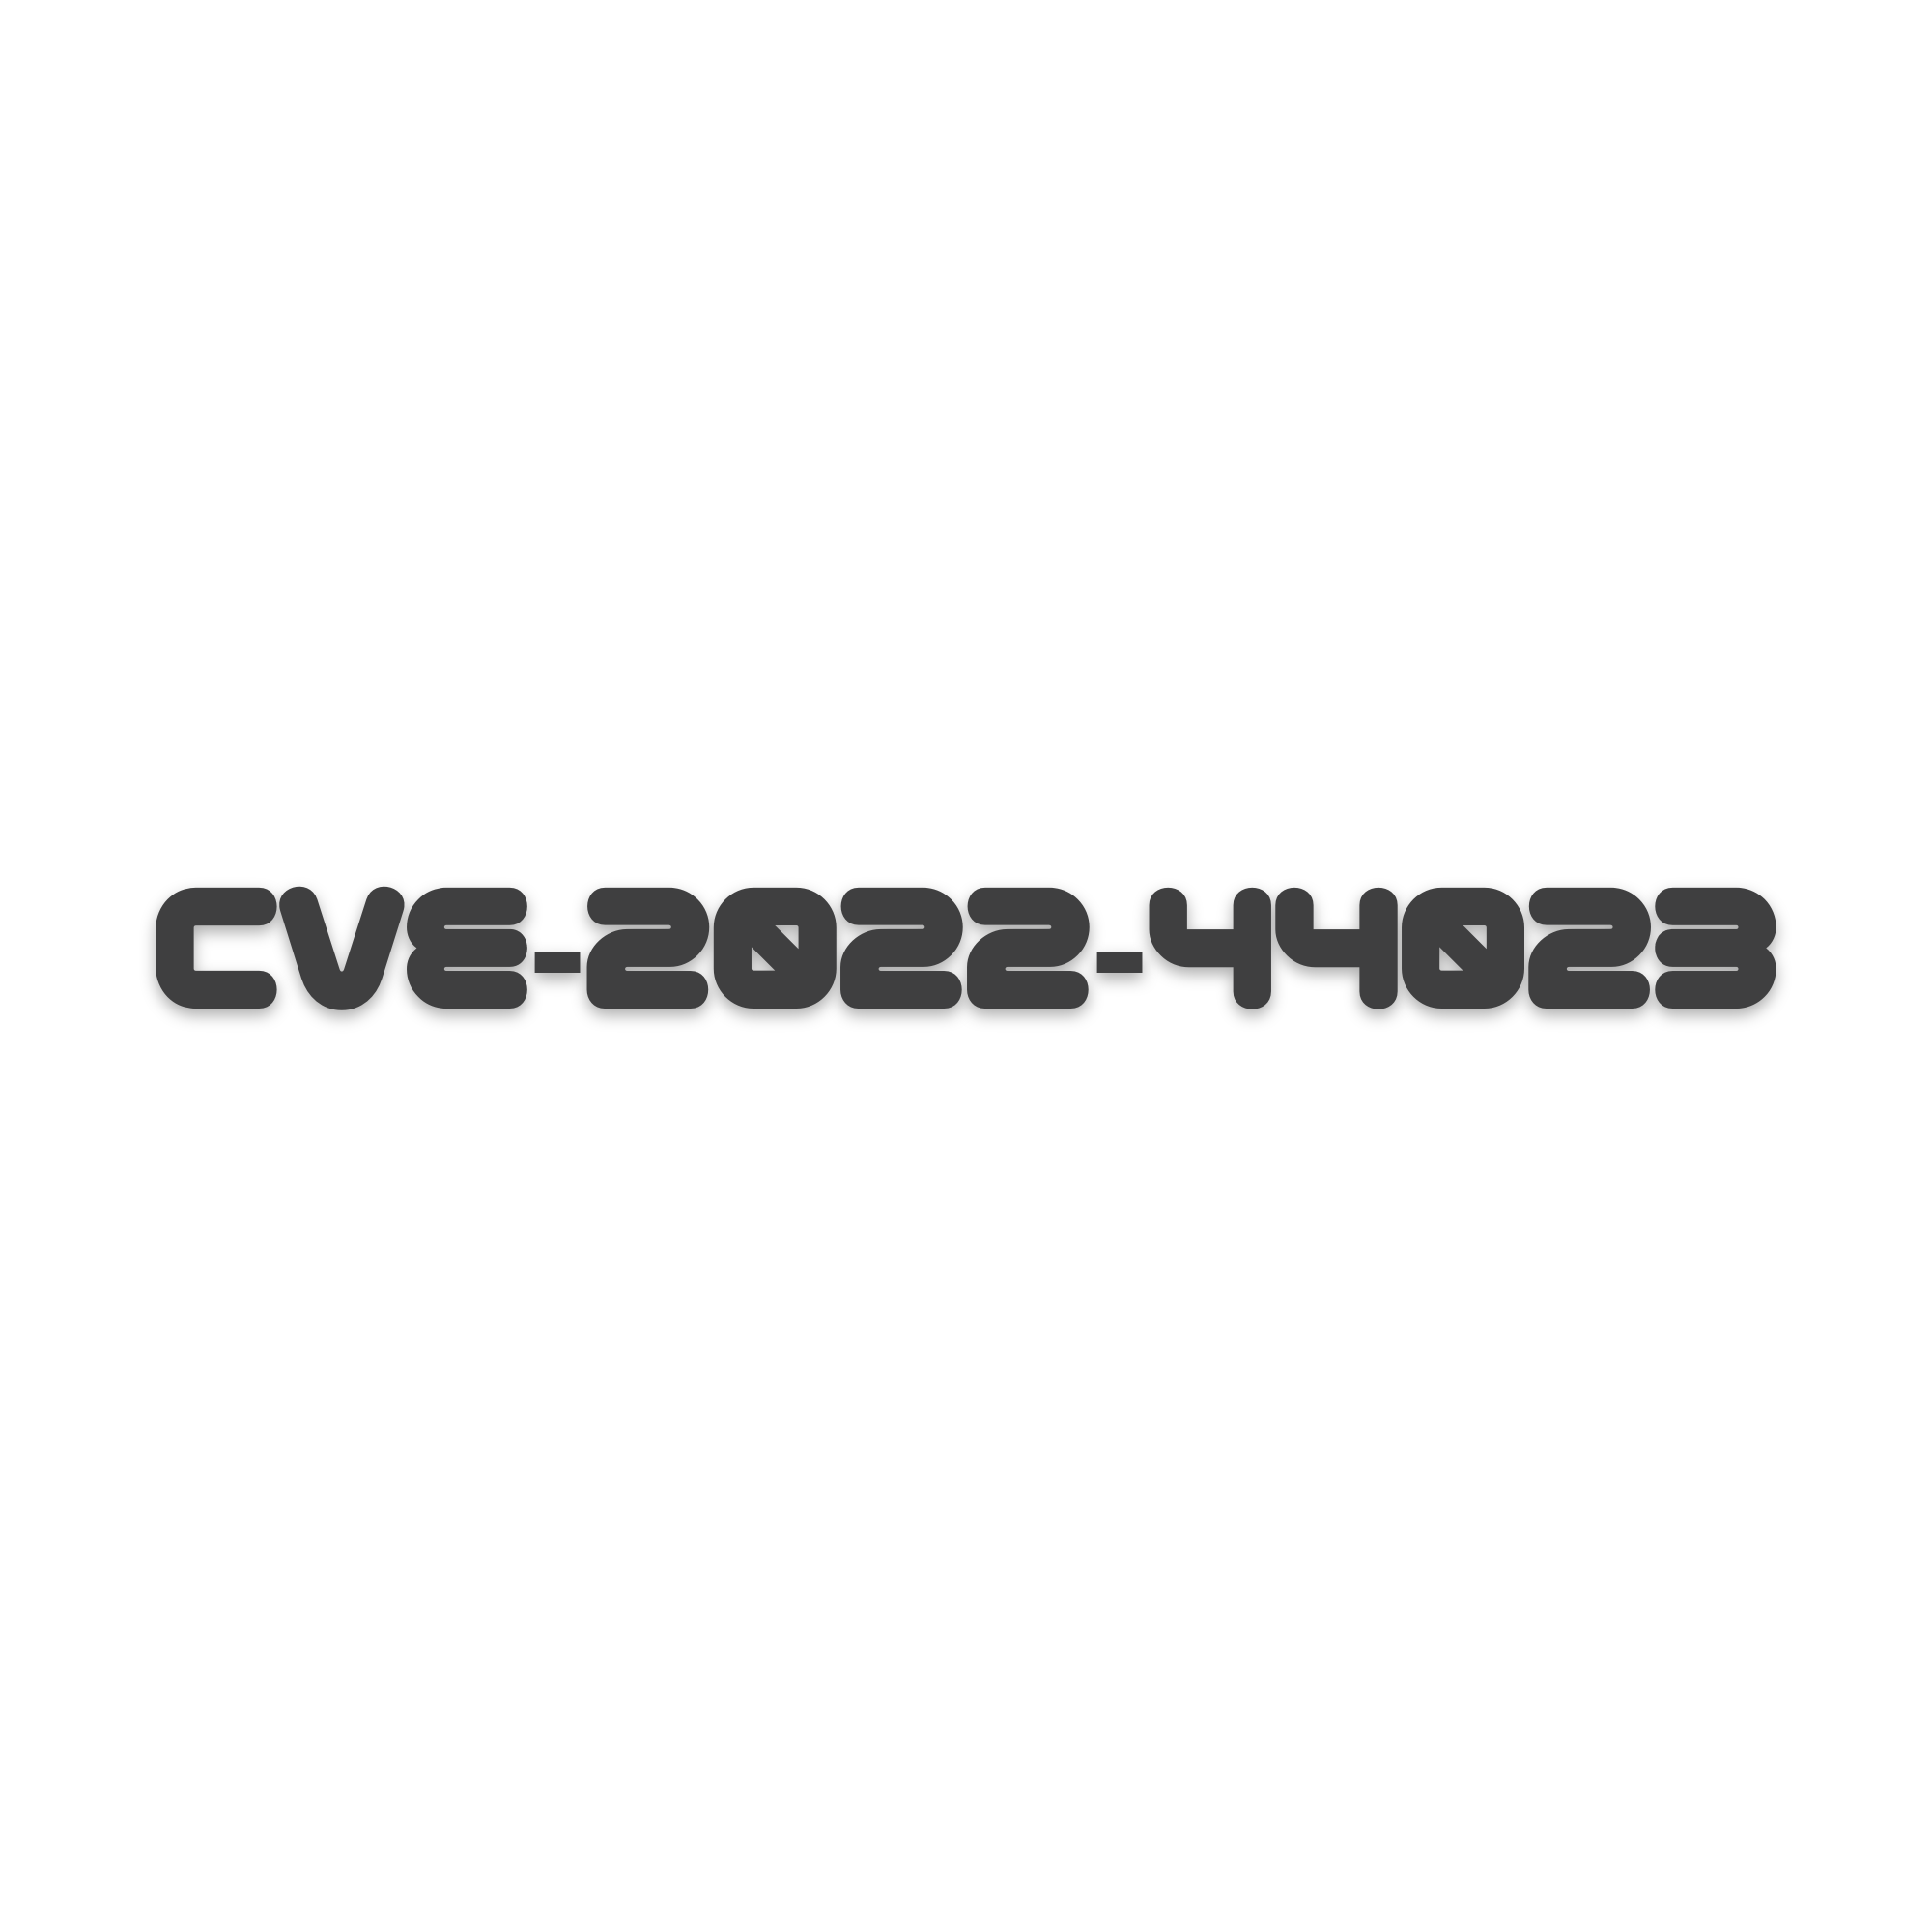 CVE-2022-44023